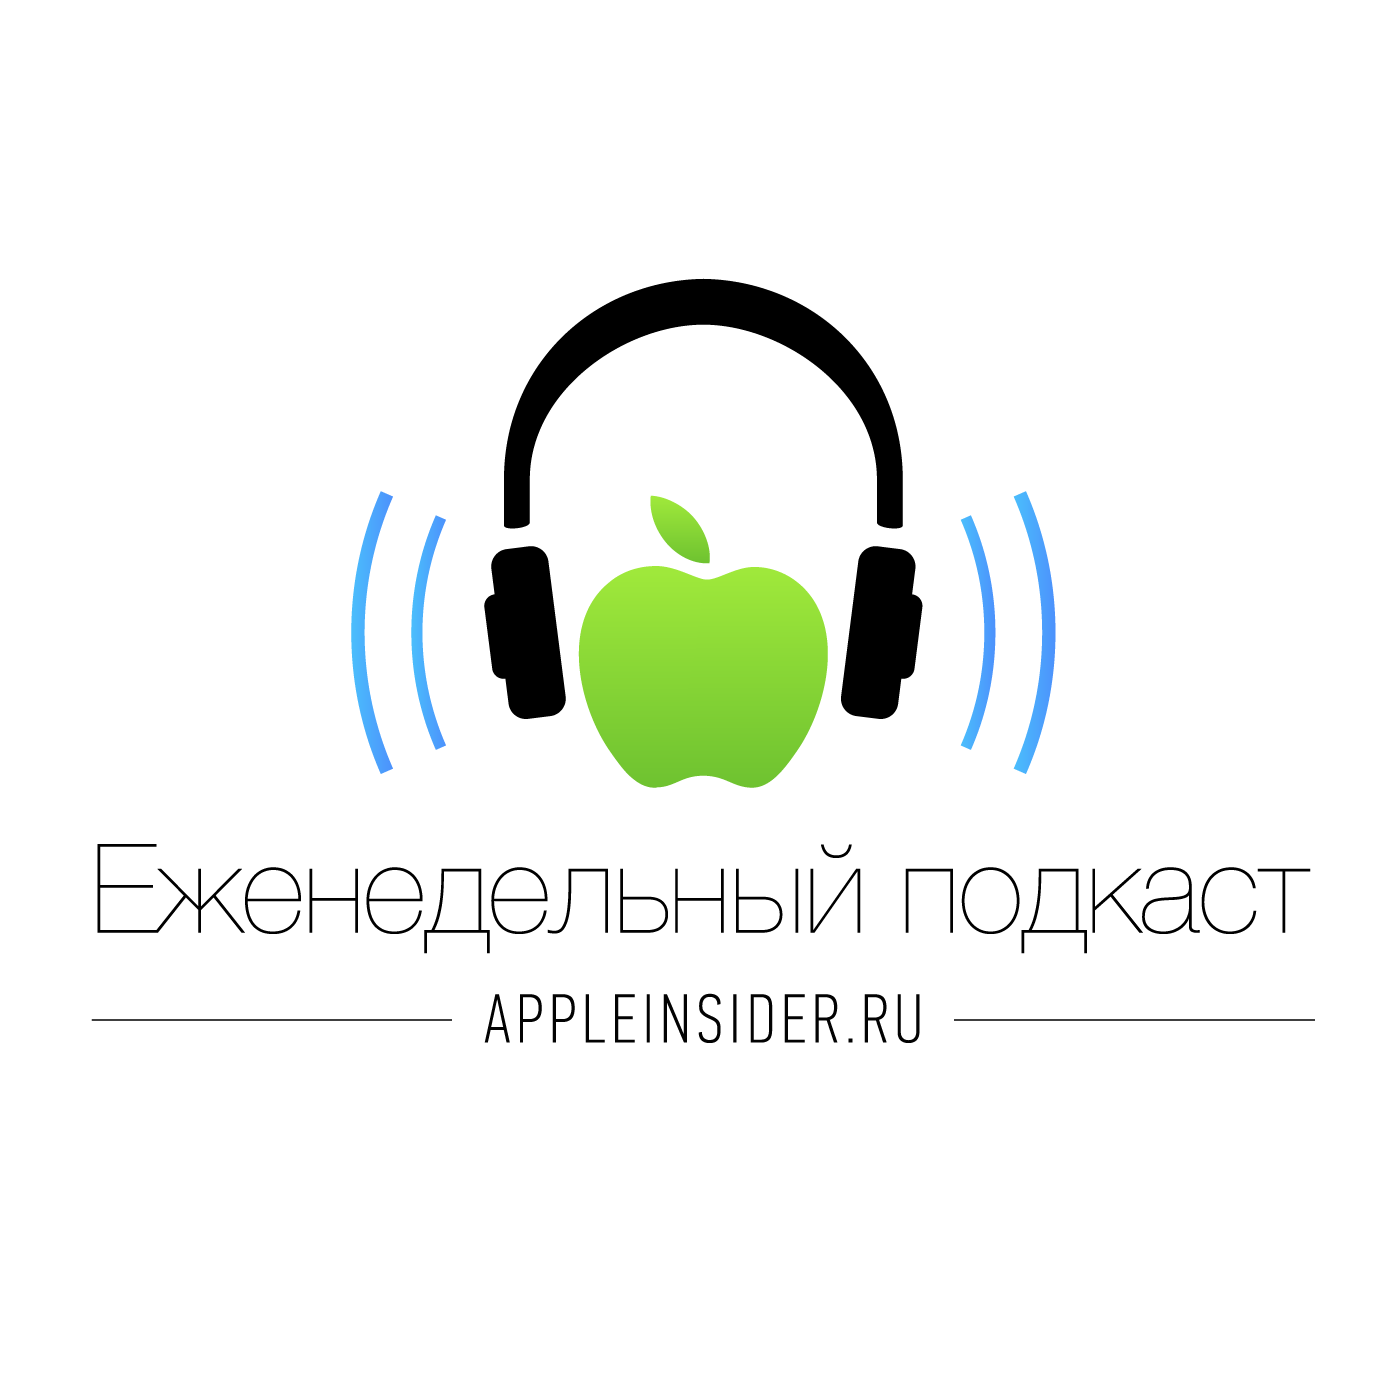 Миша Королев Как работает гарантия на технику Apple в России